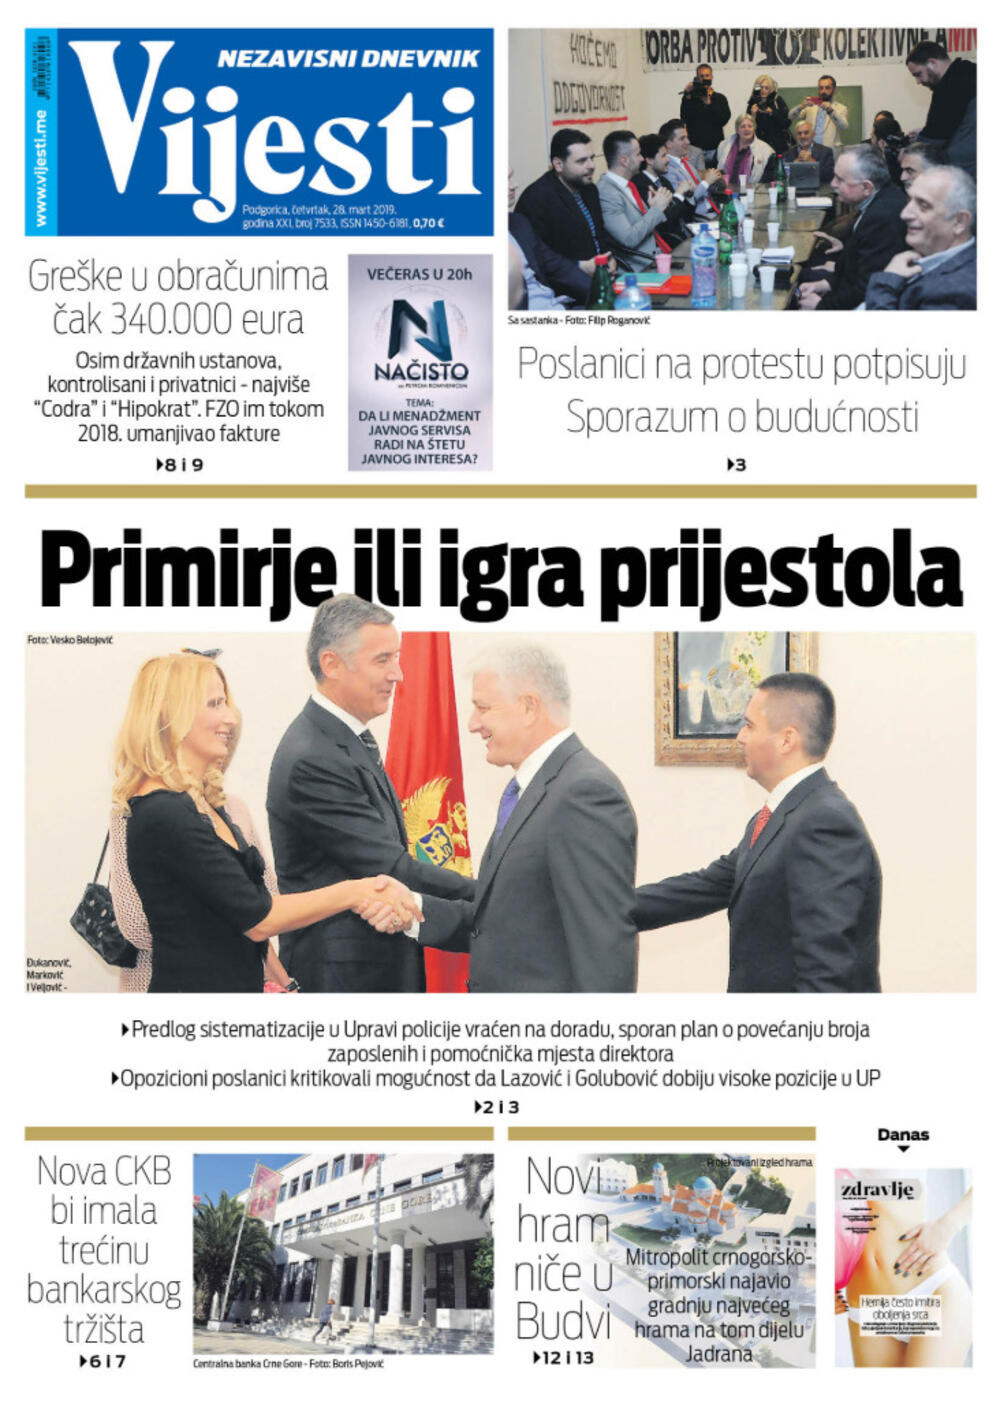 Naslovna strana "Vijesti" za 28. mart